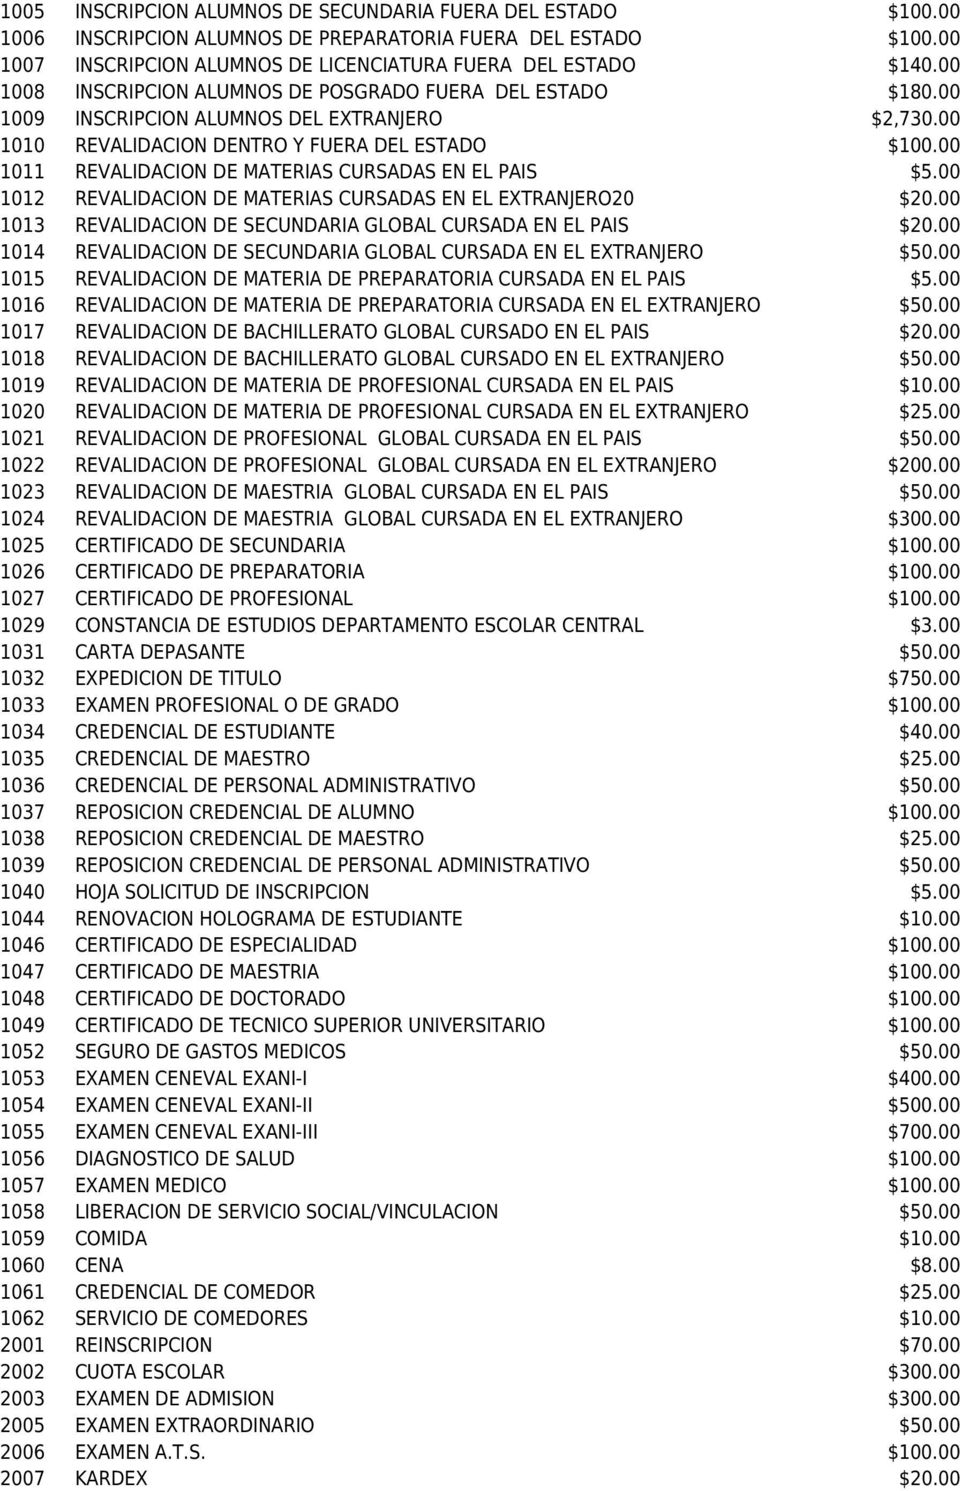 00 1040 HOJA SOLICITUD DE INSCRIPCION $5.00 1047 CERTIFICADO DE MAESTRIA $100.00 1052 SEGURO DE GASTOS MEDICOS $50.